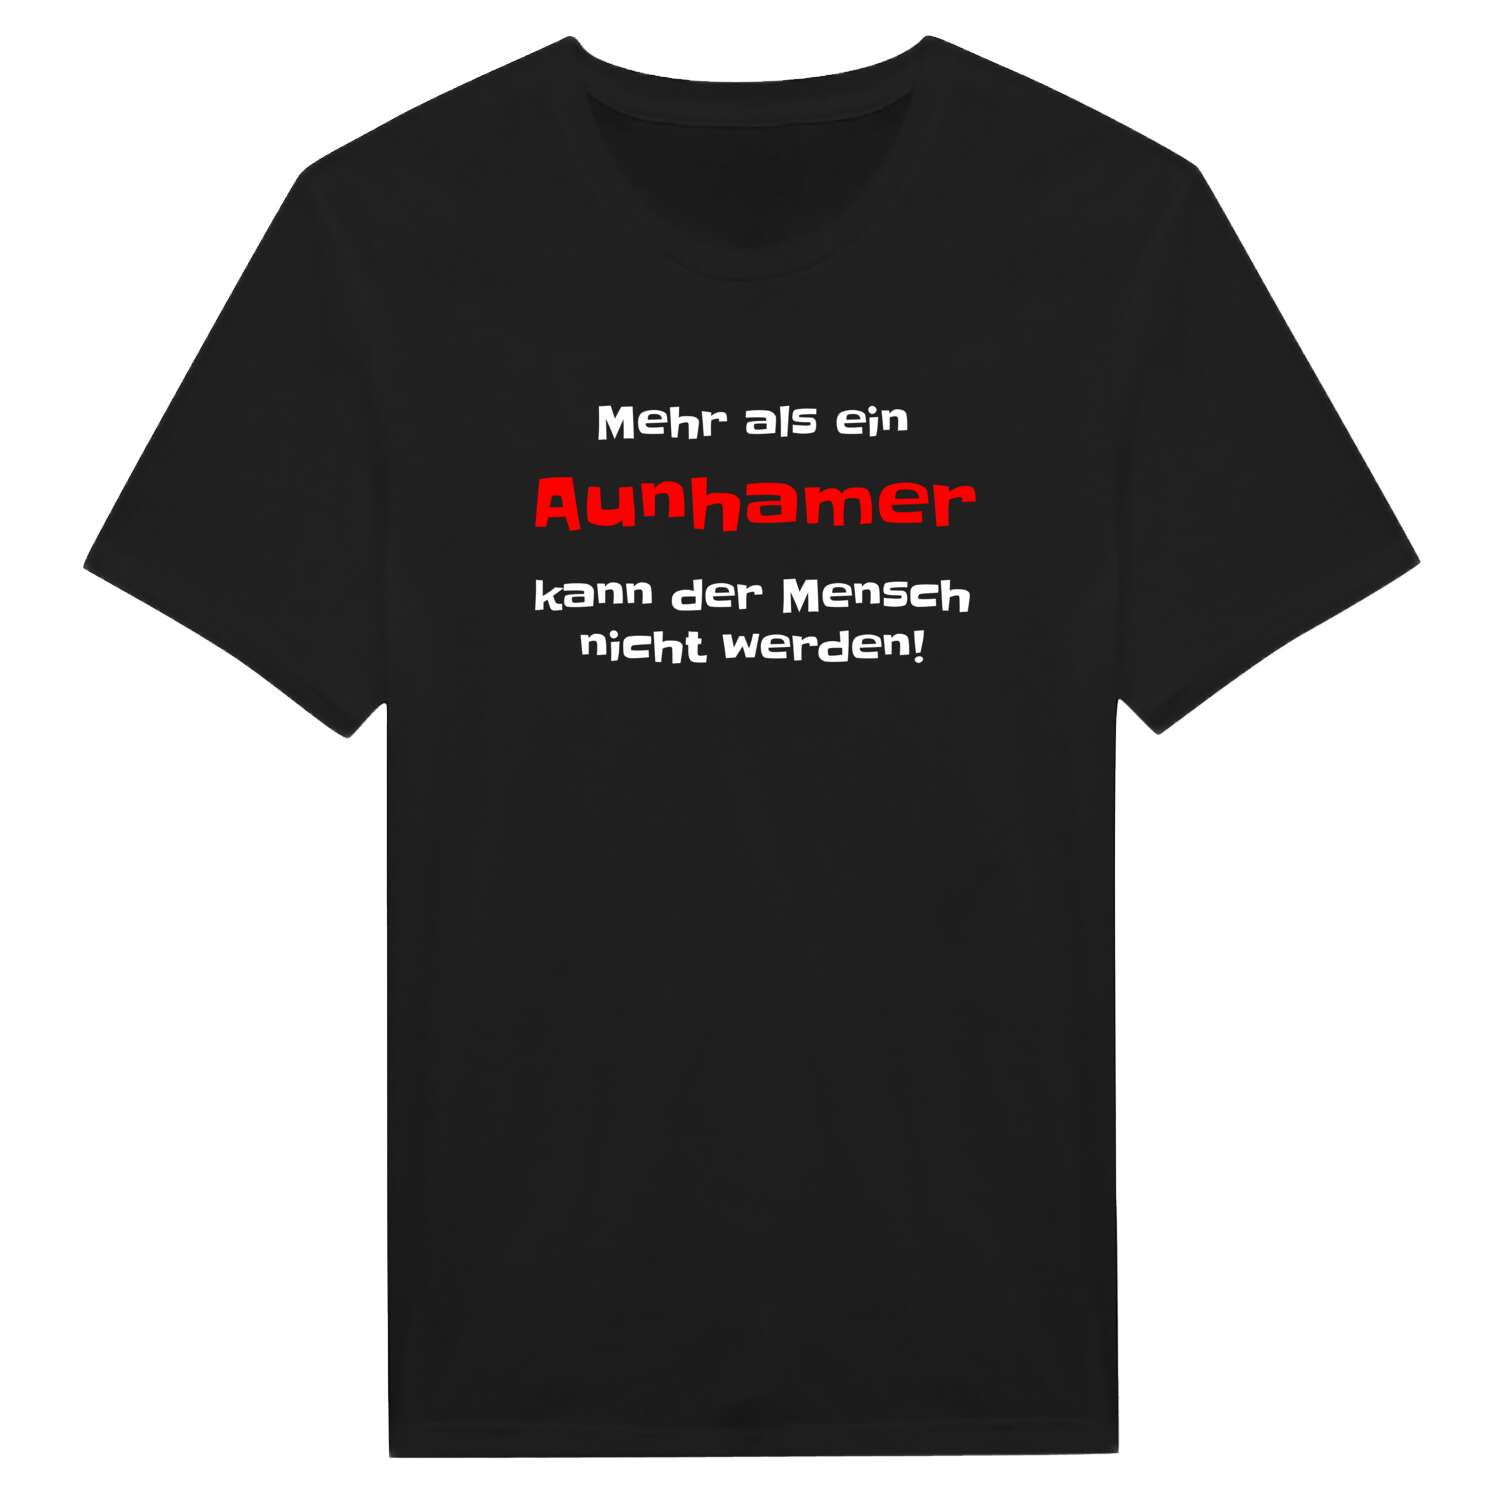 Aunham T-Shirt »Mehr als ein«